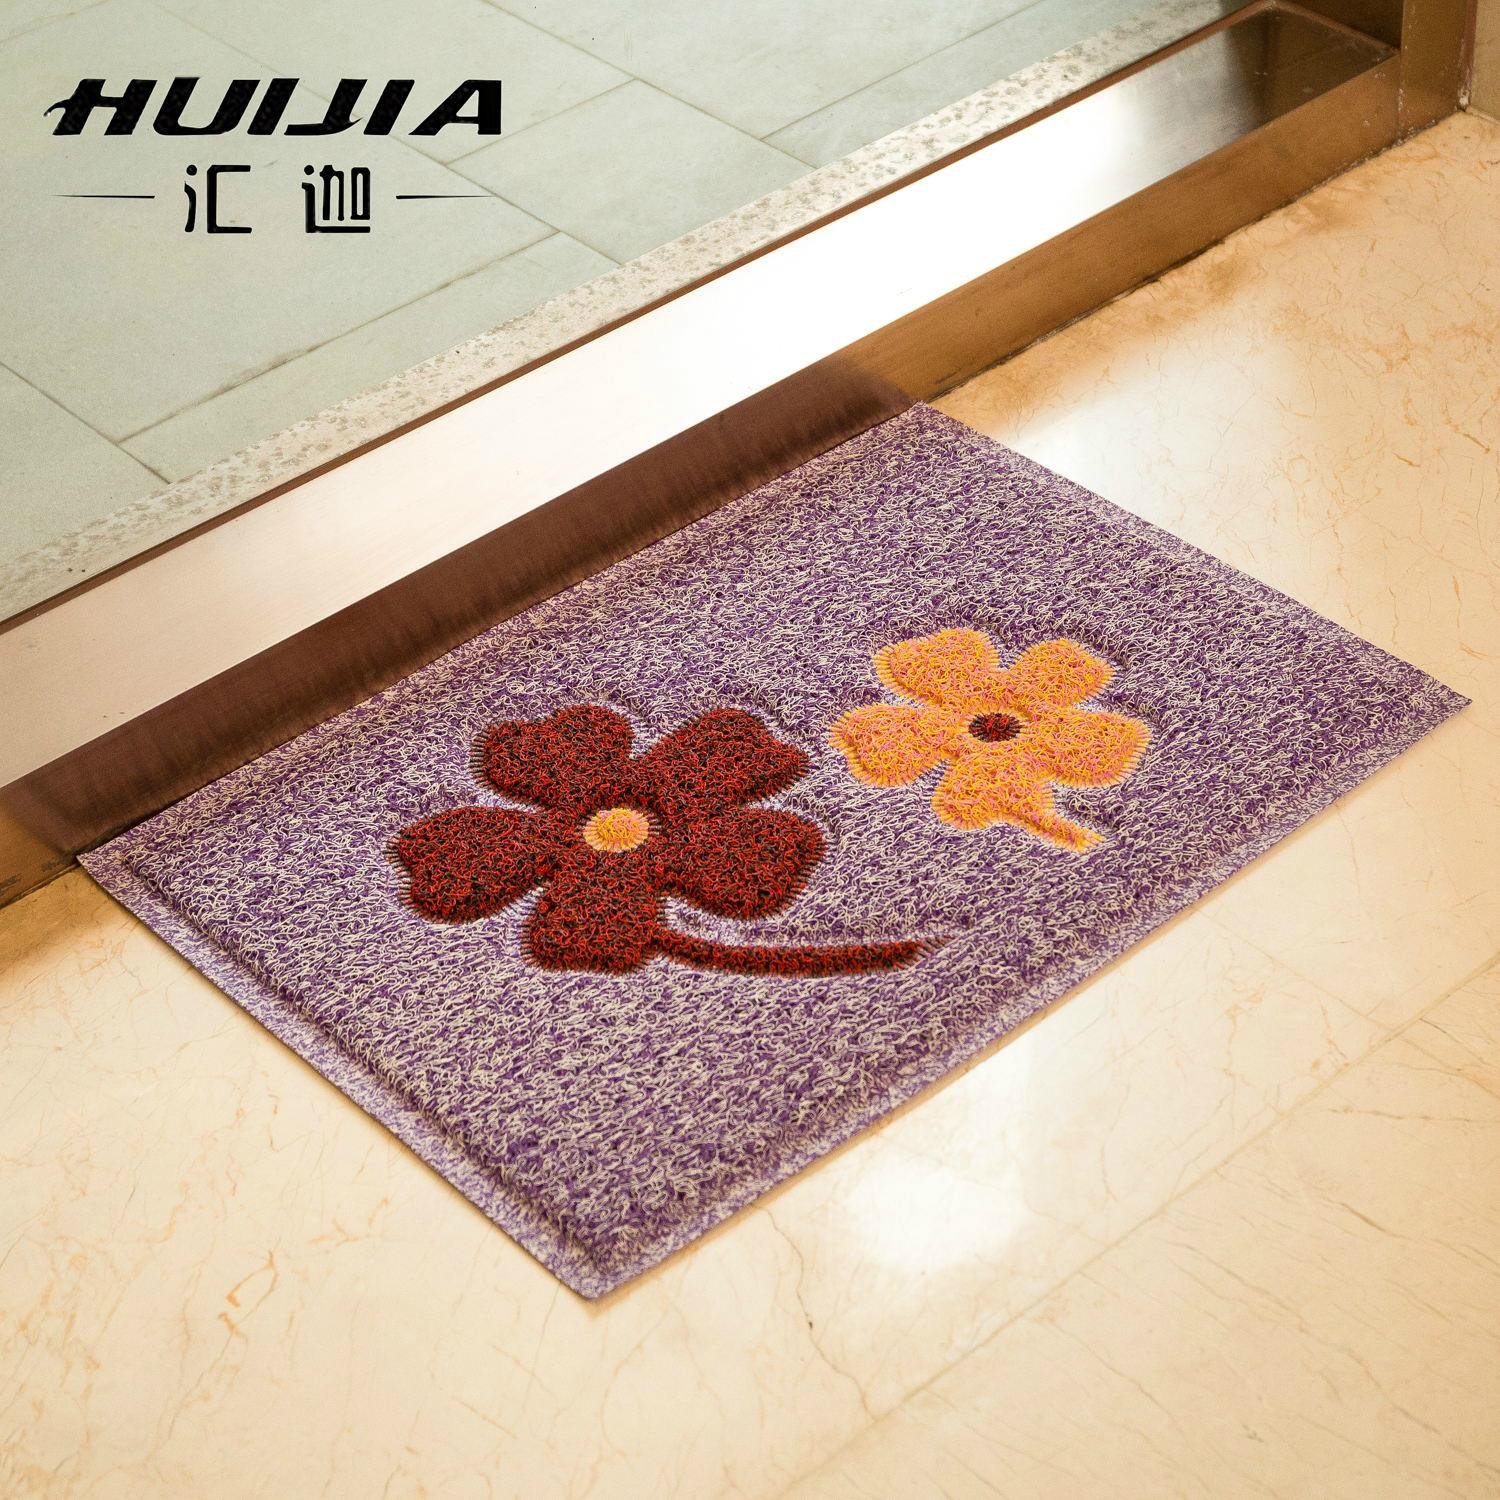 Double color PVC rubber mat waterproof floor mat 